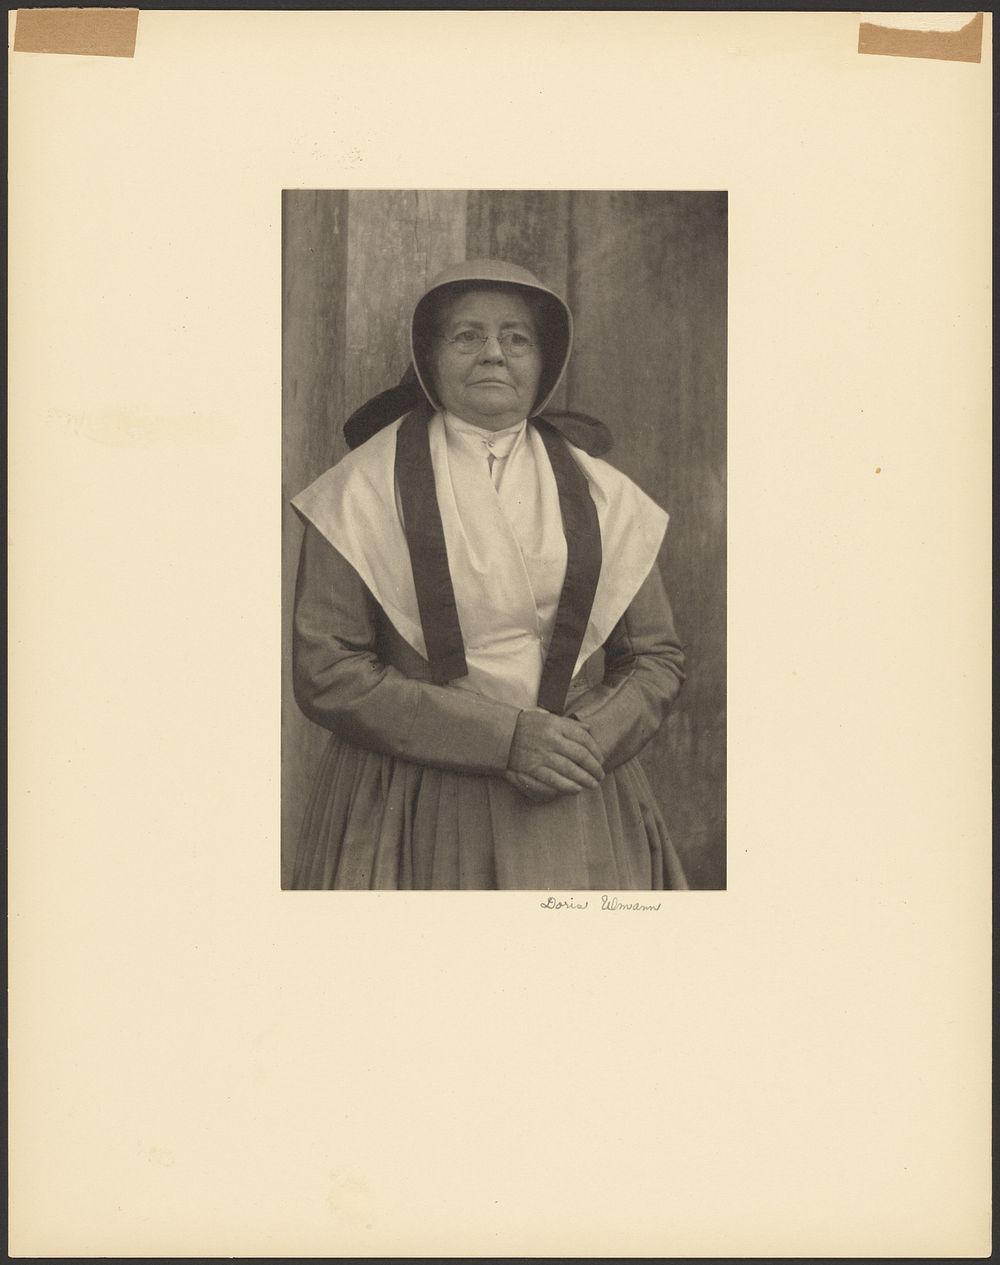 Sister Adelaide, Shaker Settlement, Mt. Lebanon, New York by Doris Ulmann